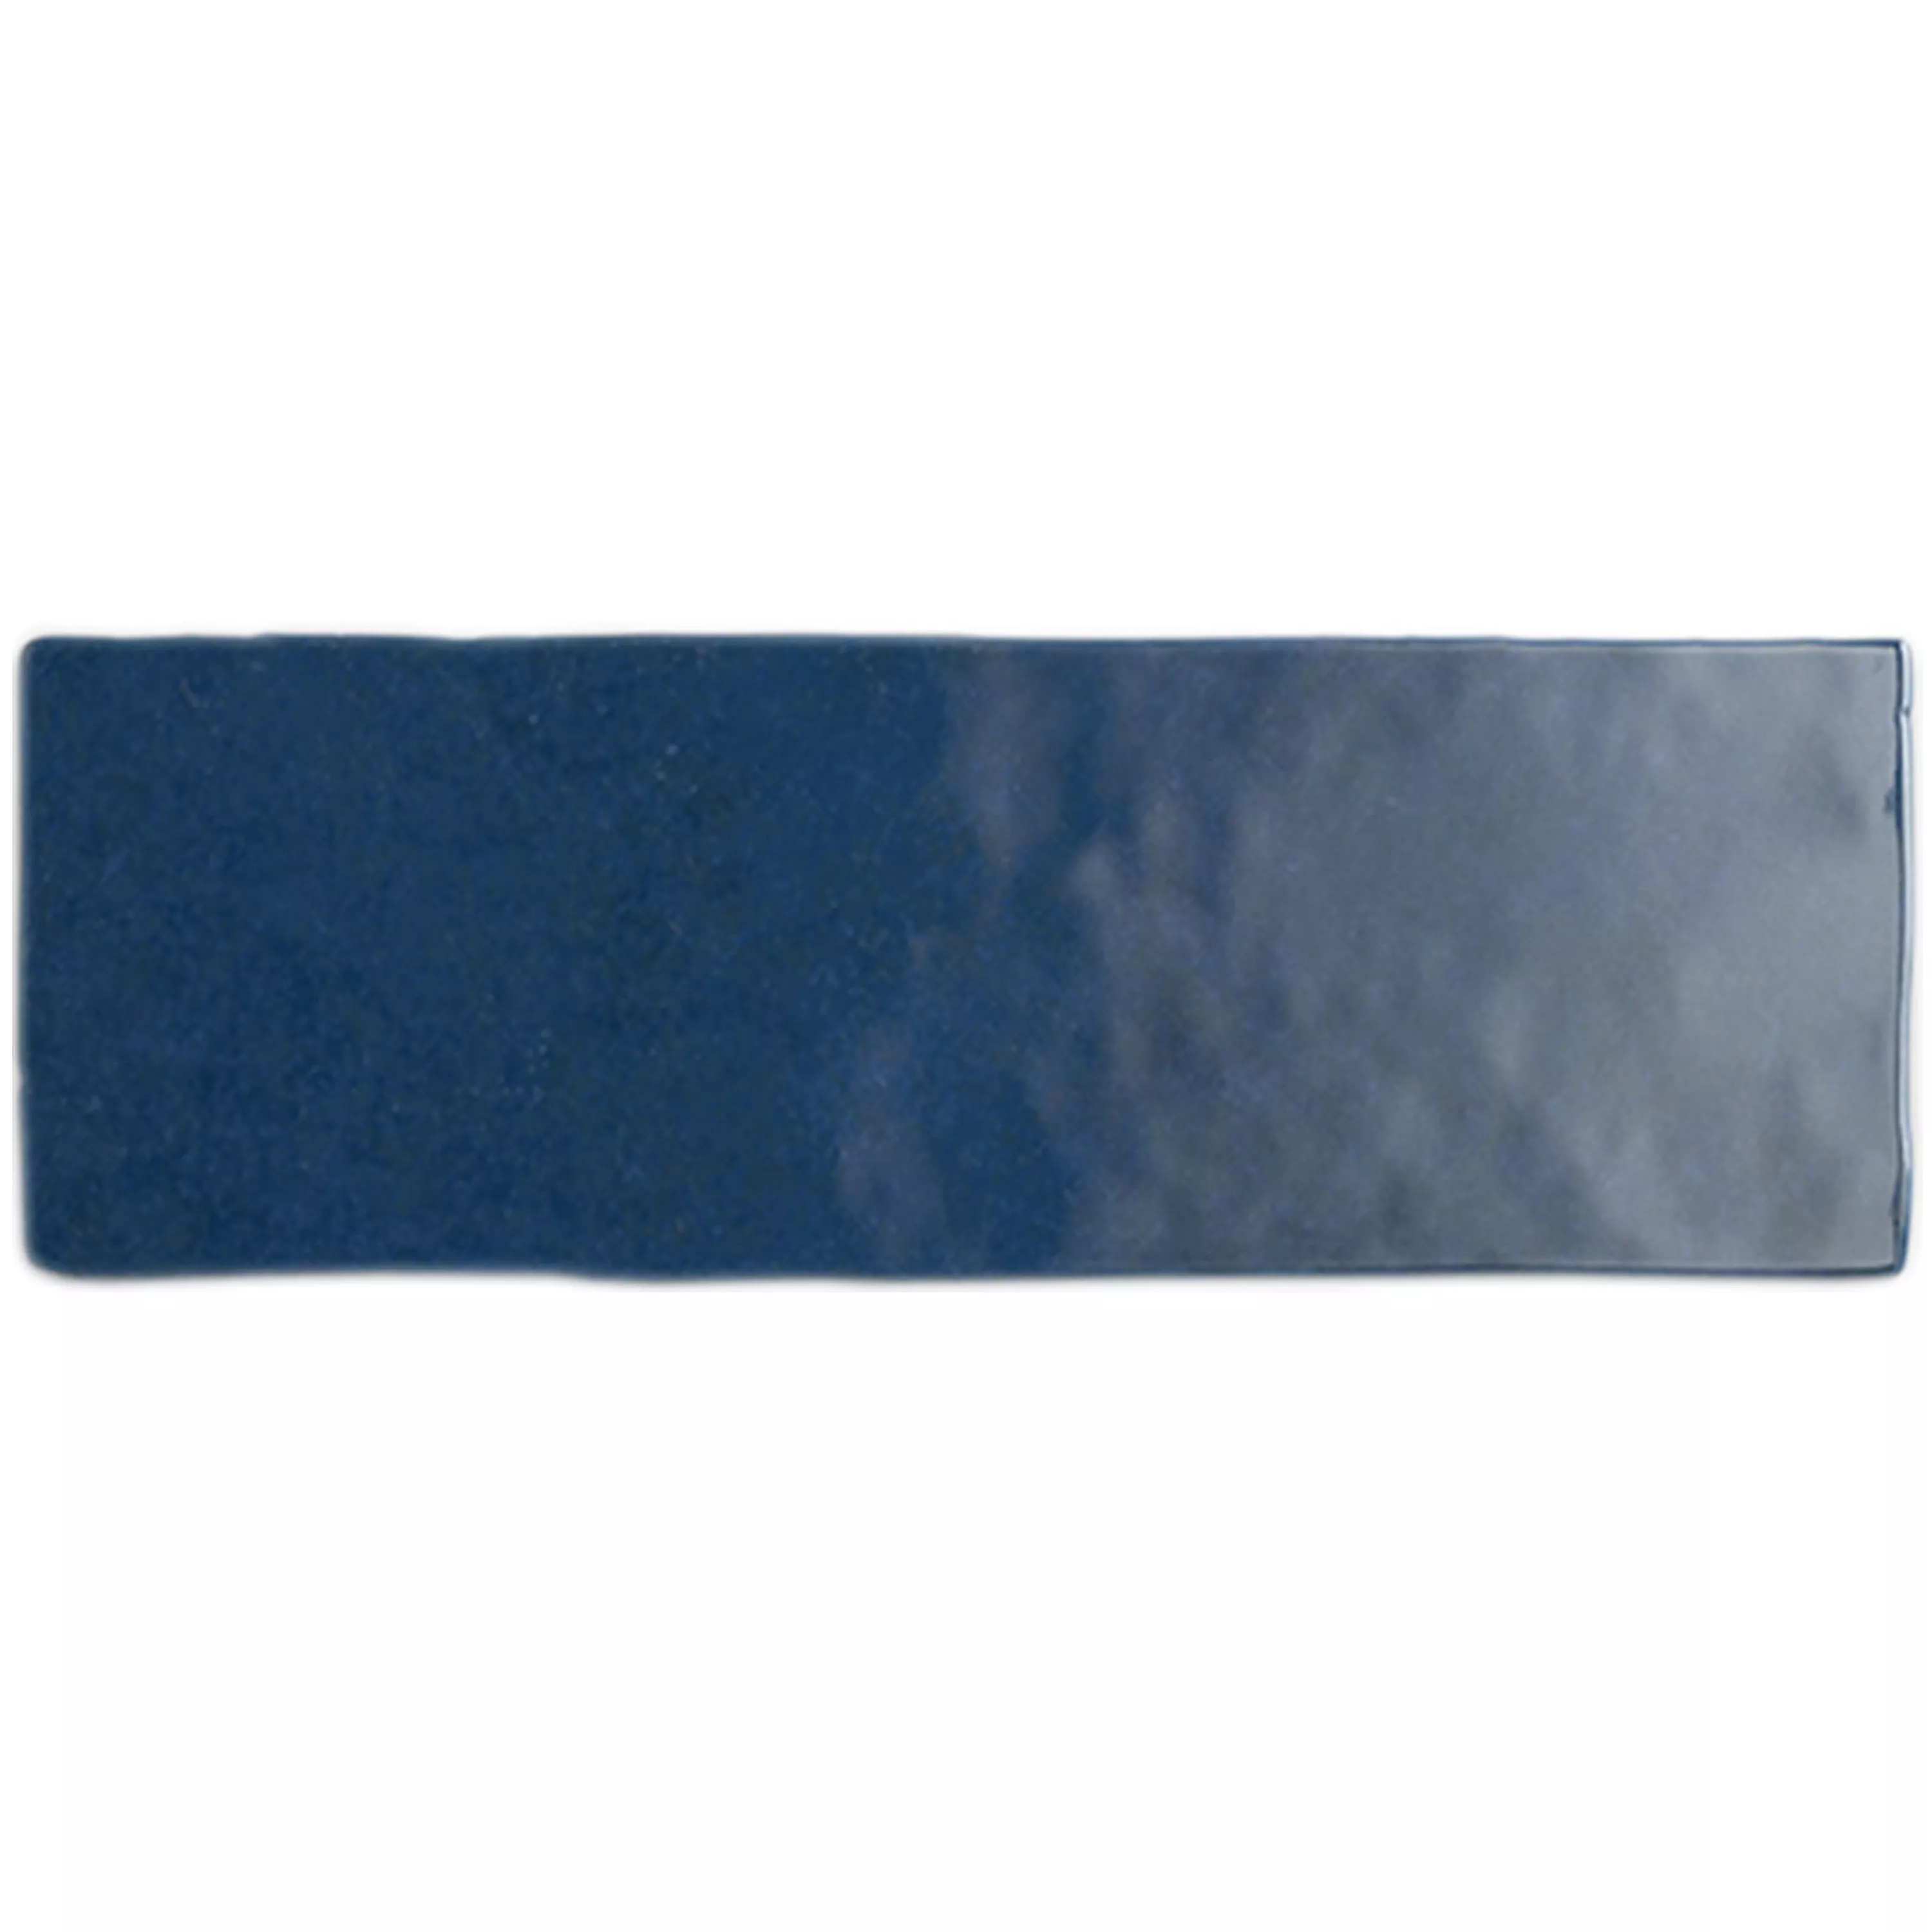 Πλακάκια Tοίχου Concord Κυματική Οπτική Μπλε 6,5x20cm